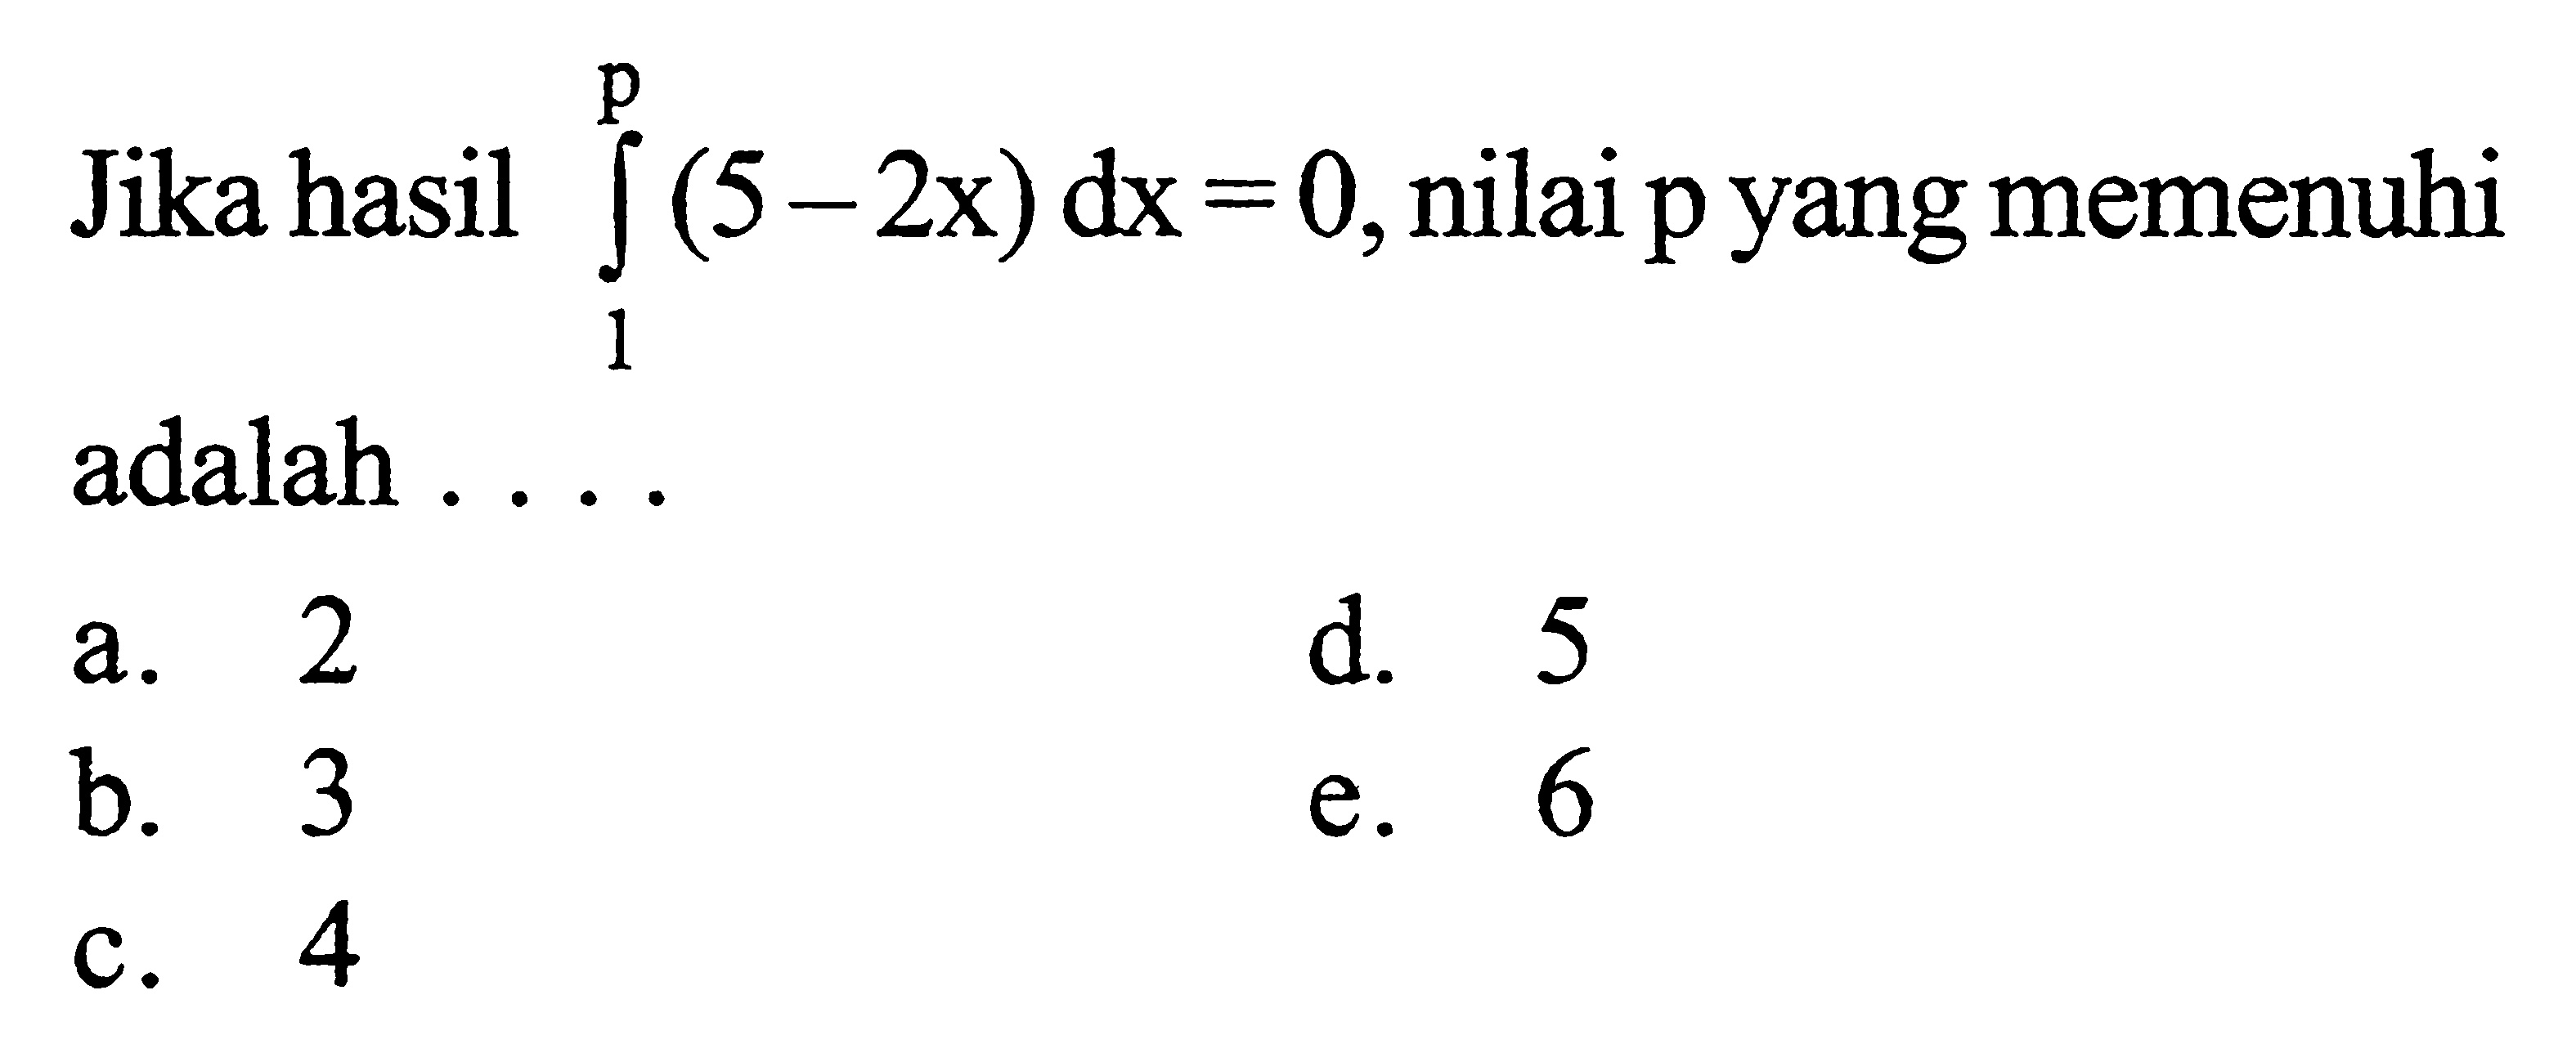 Jika hasil integral 1 p (5-2x) dx=0 , nilai p yang memenuhi adalah ....